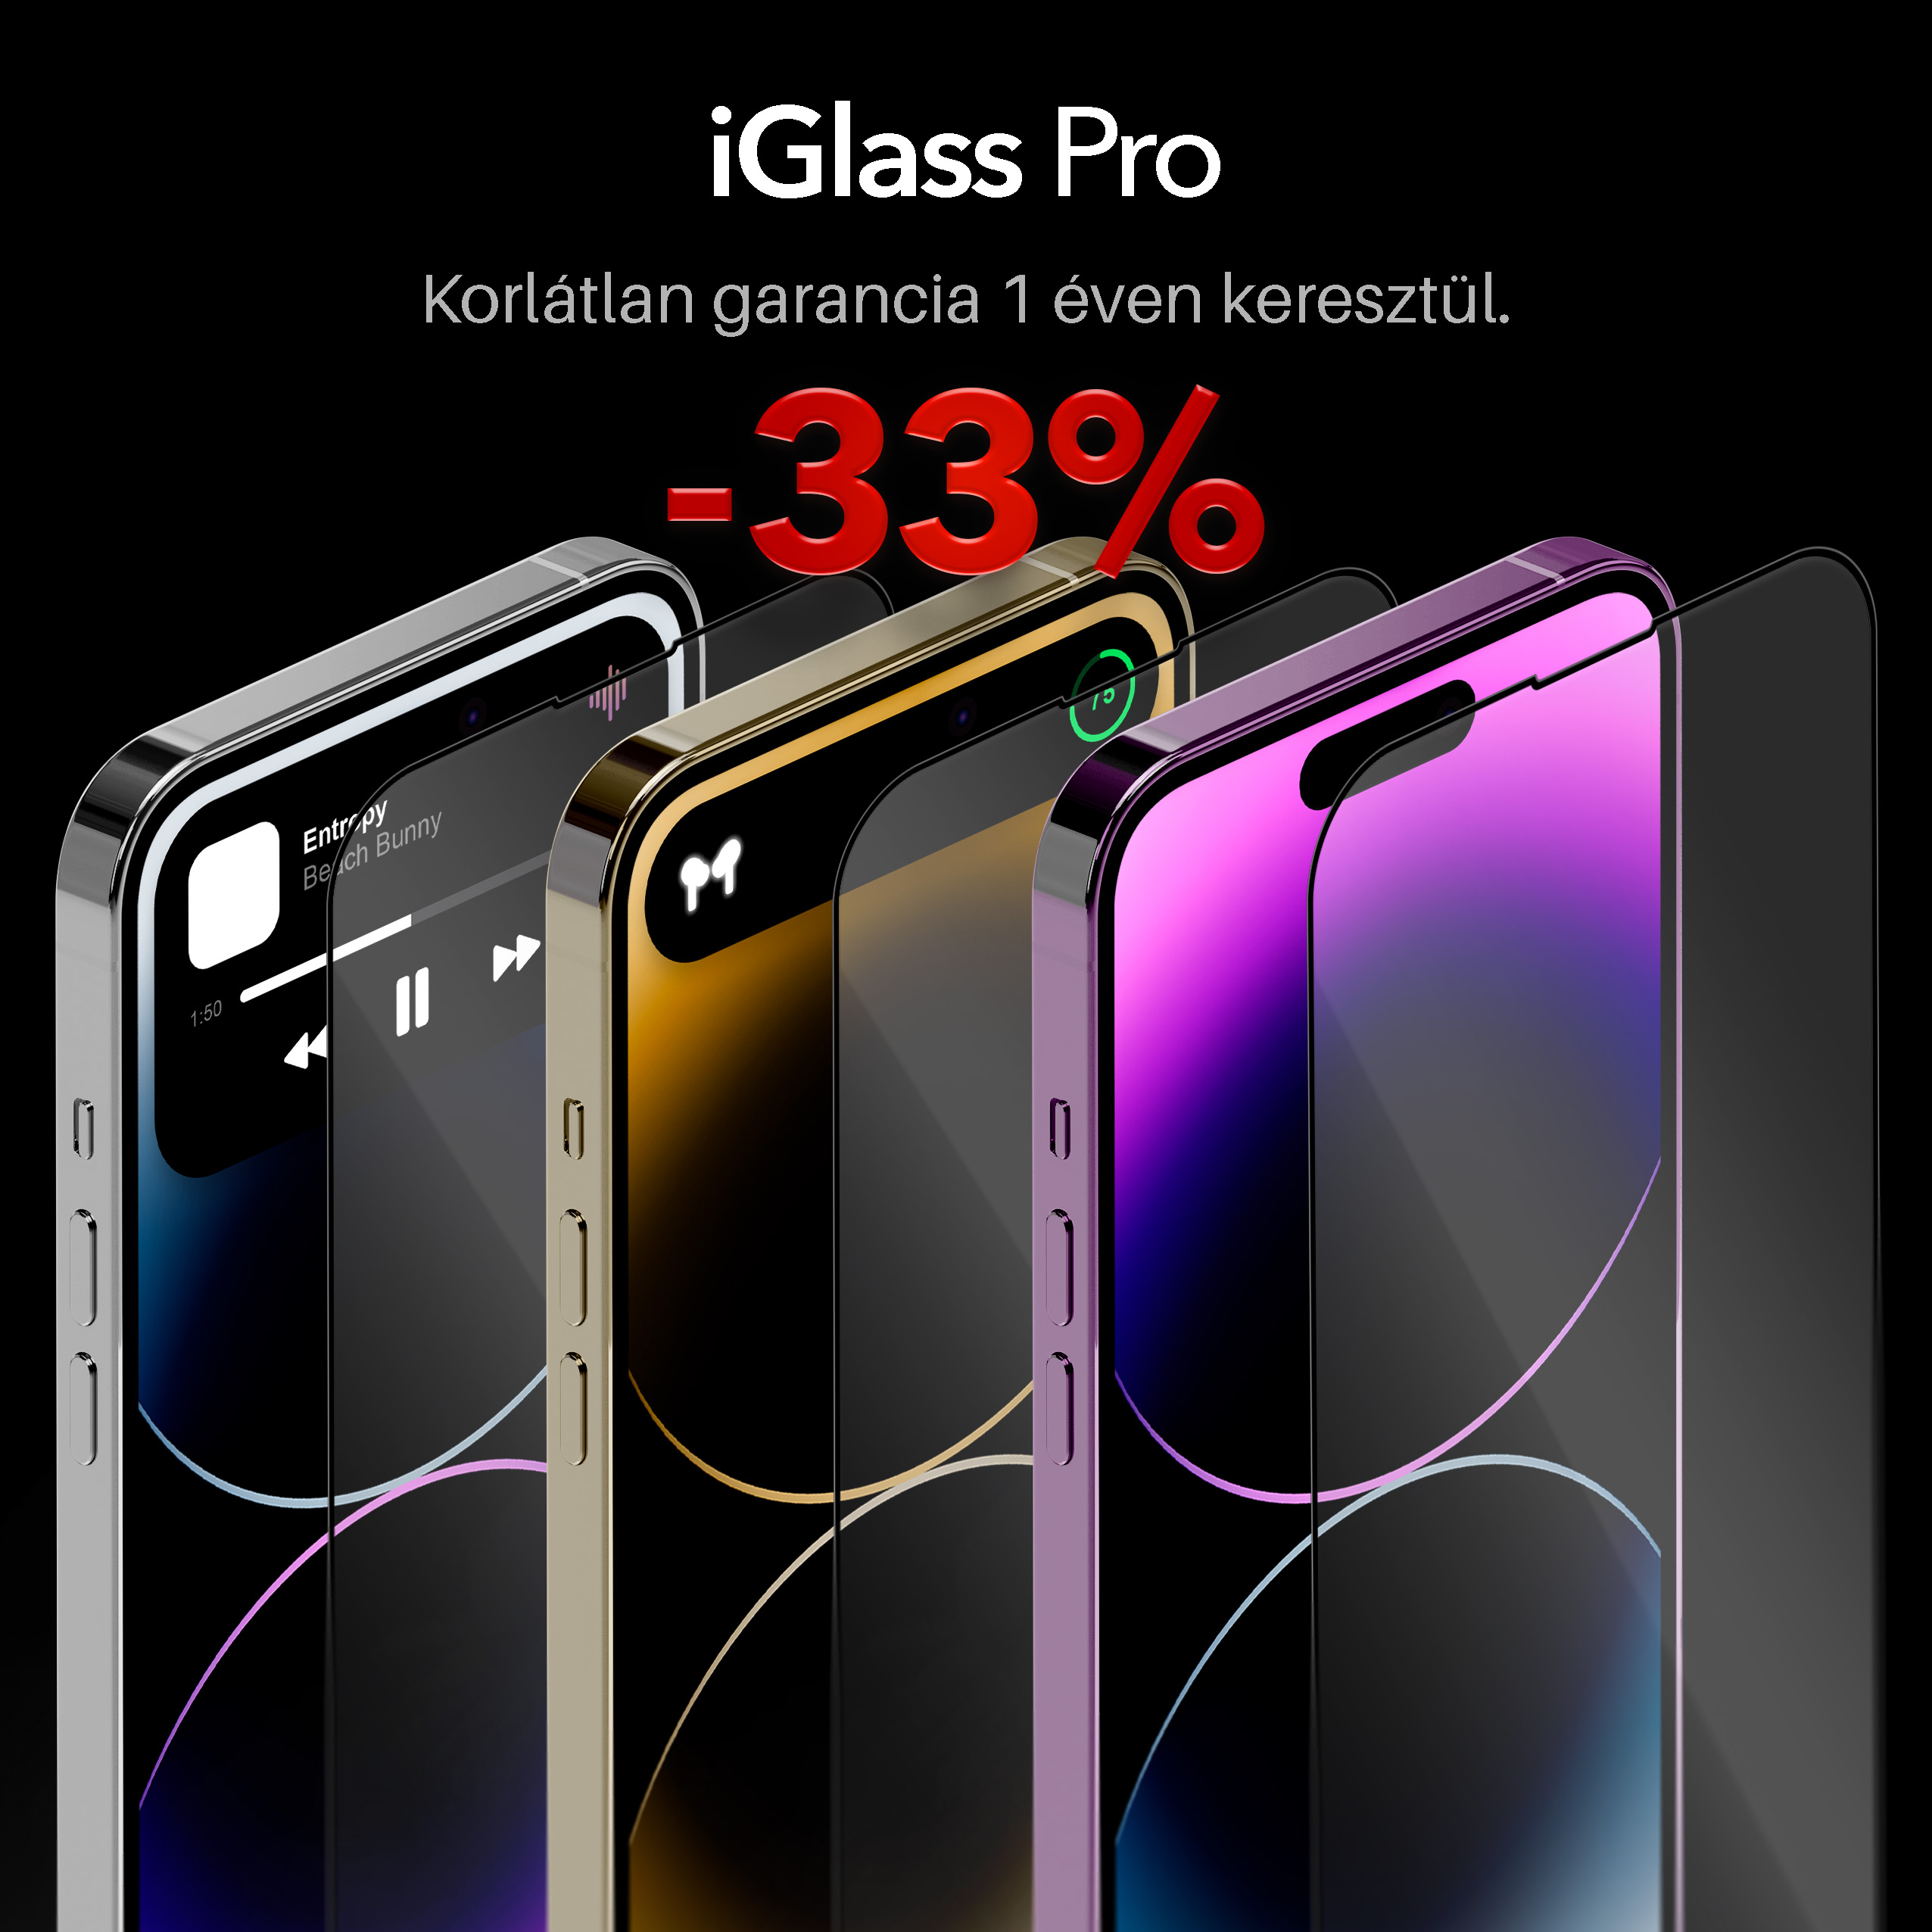 1 iGlass Pro 33 gombnelkul-iglass-iphone-uvegfolia